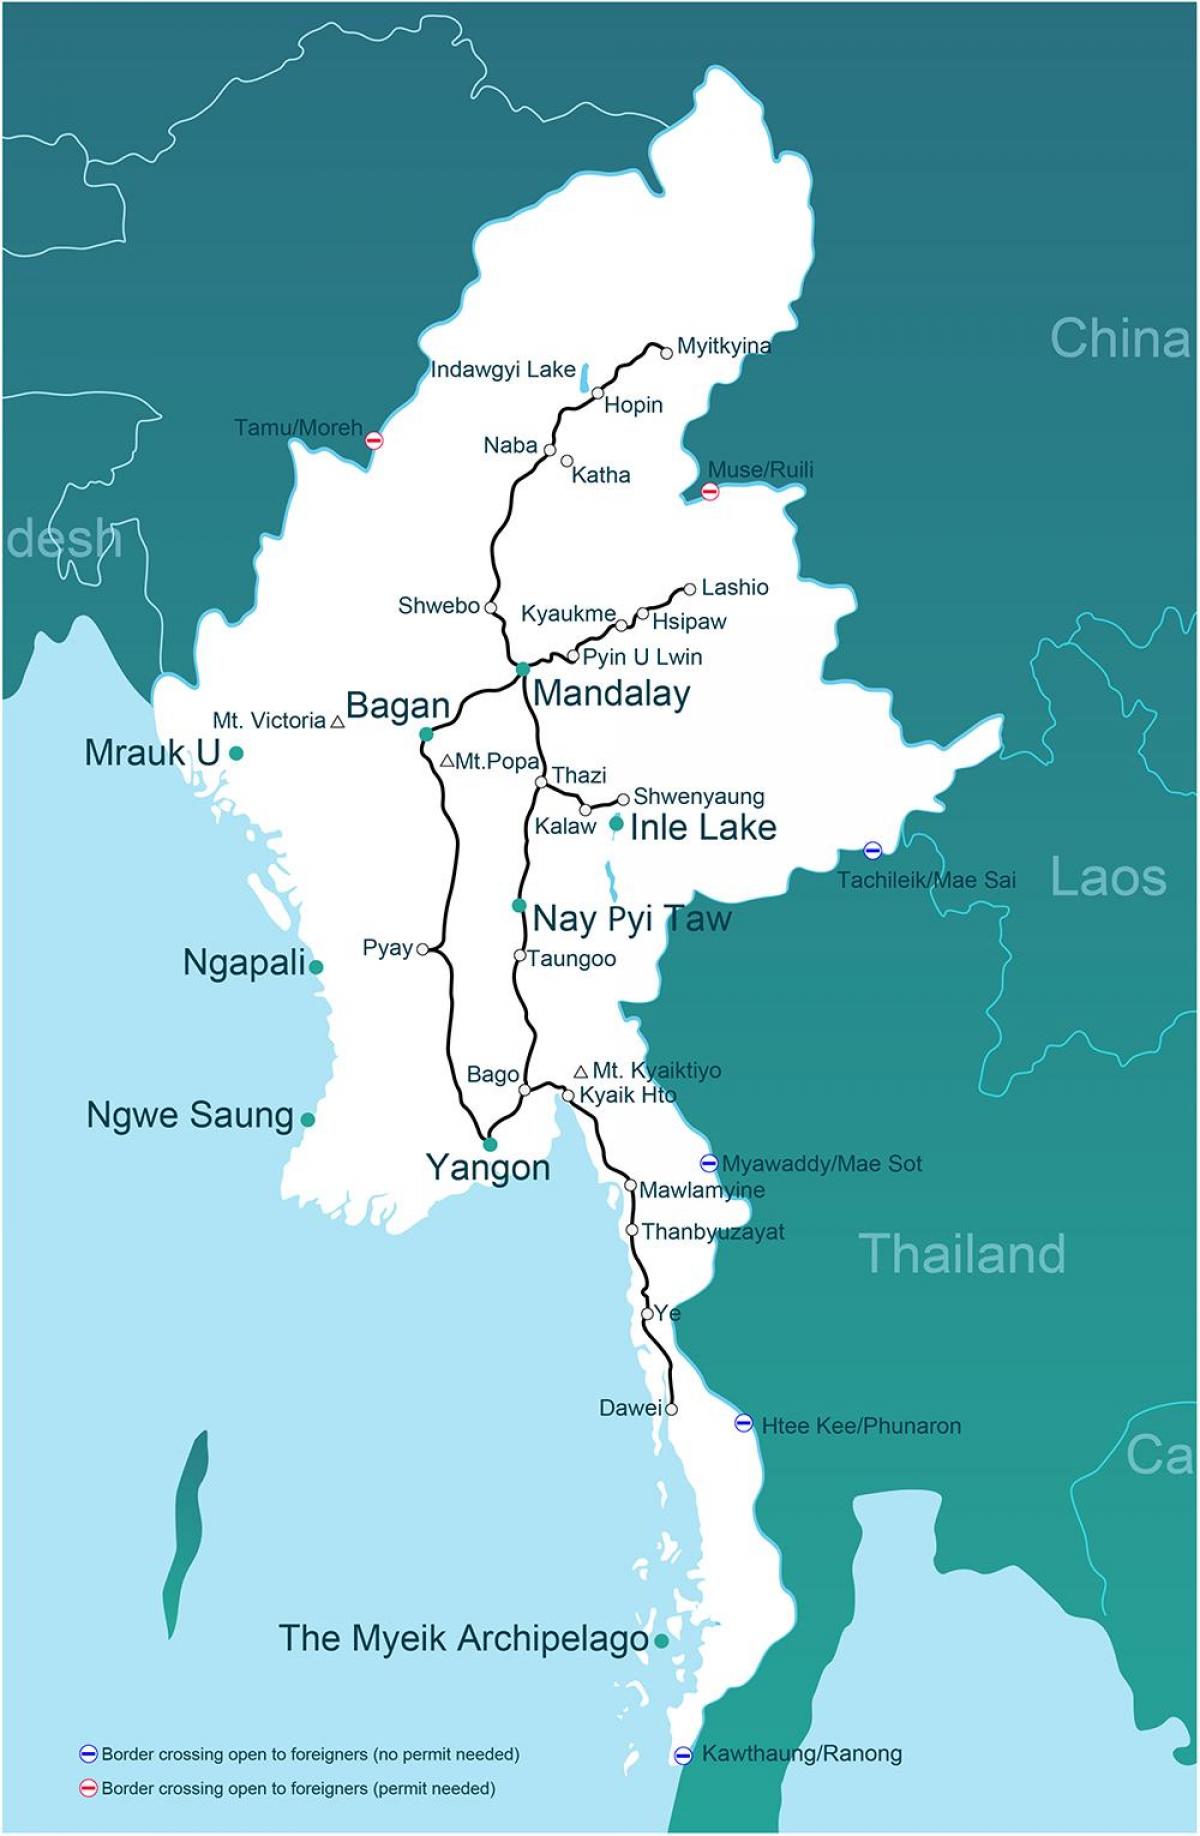 یک نقشه میانمار